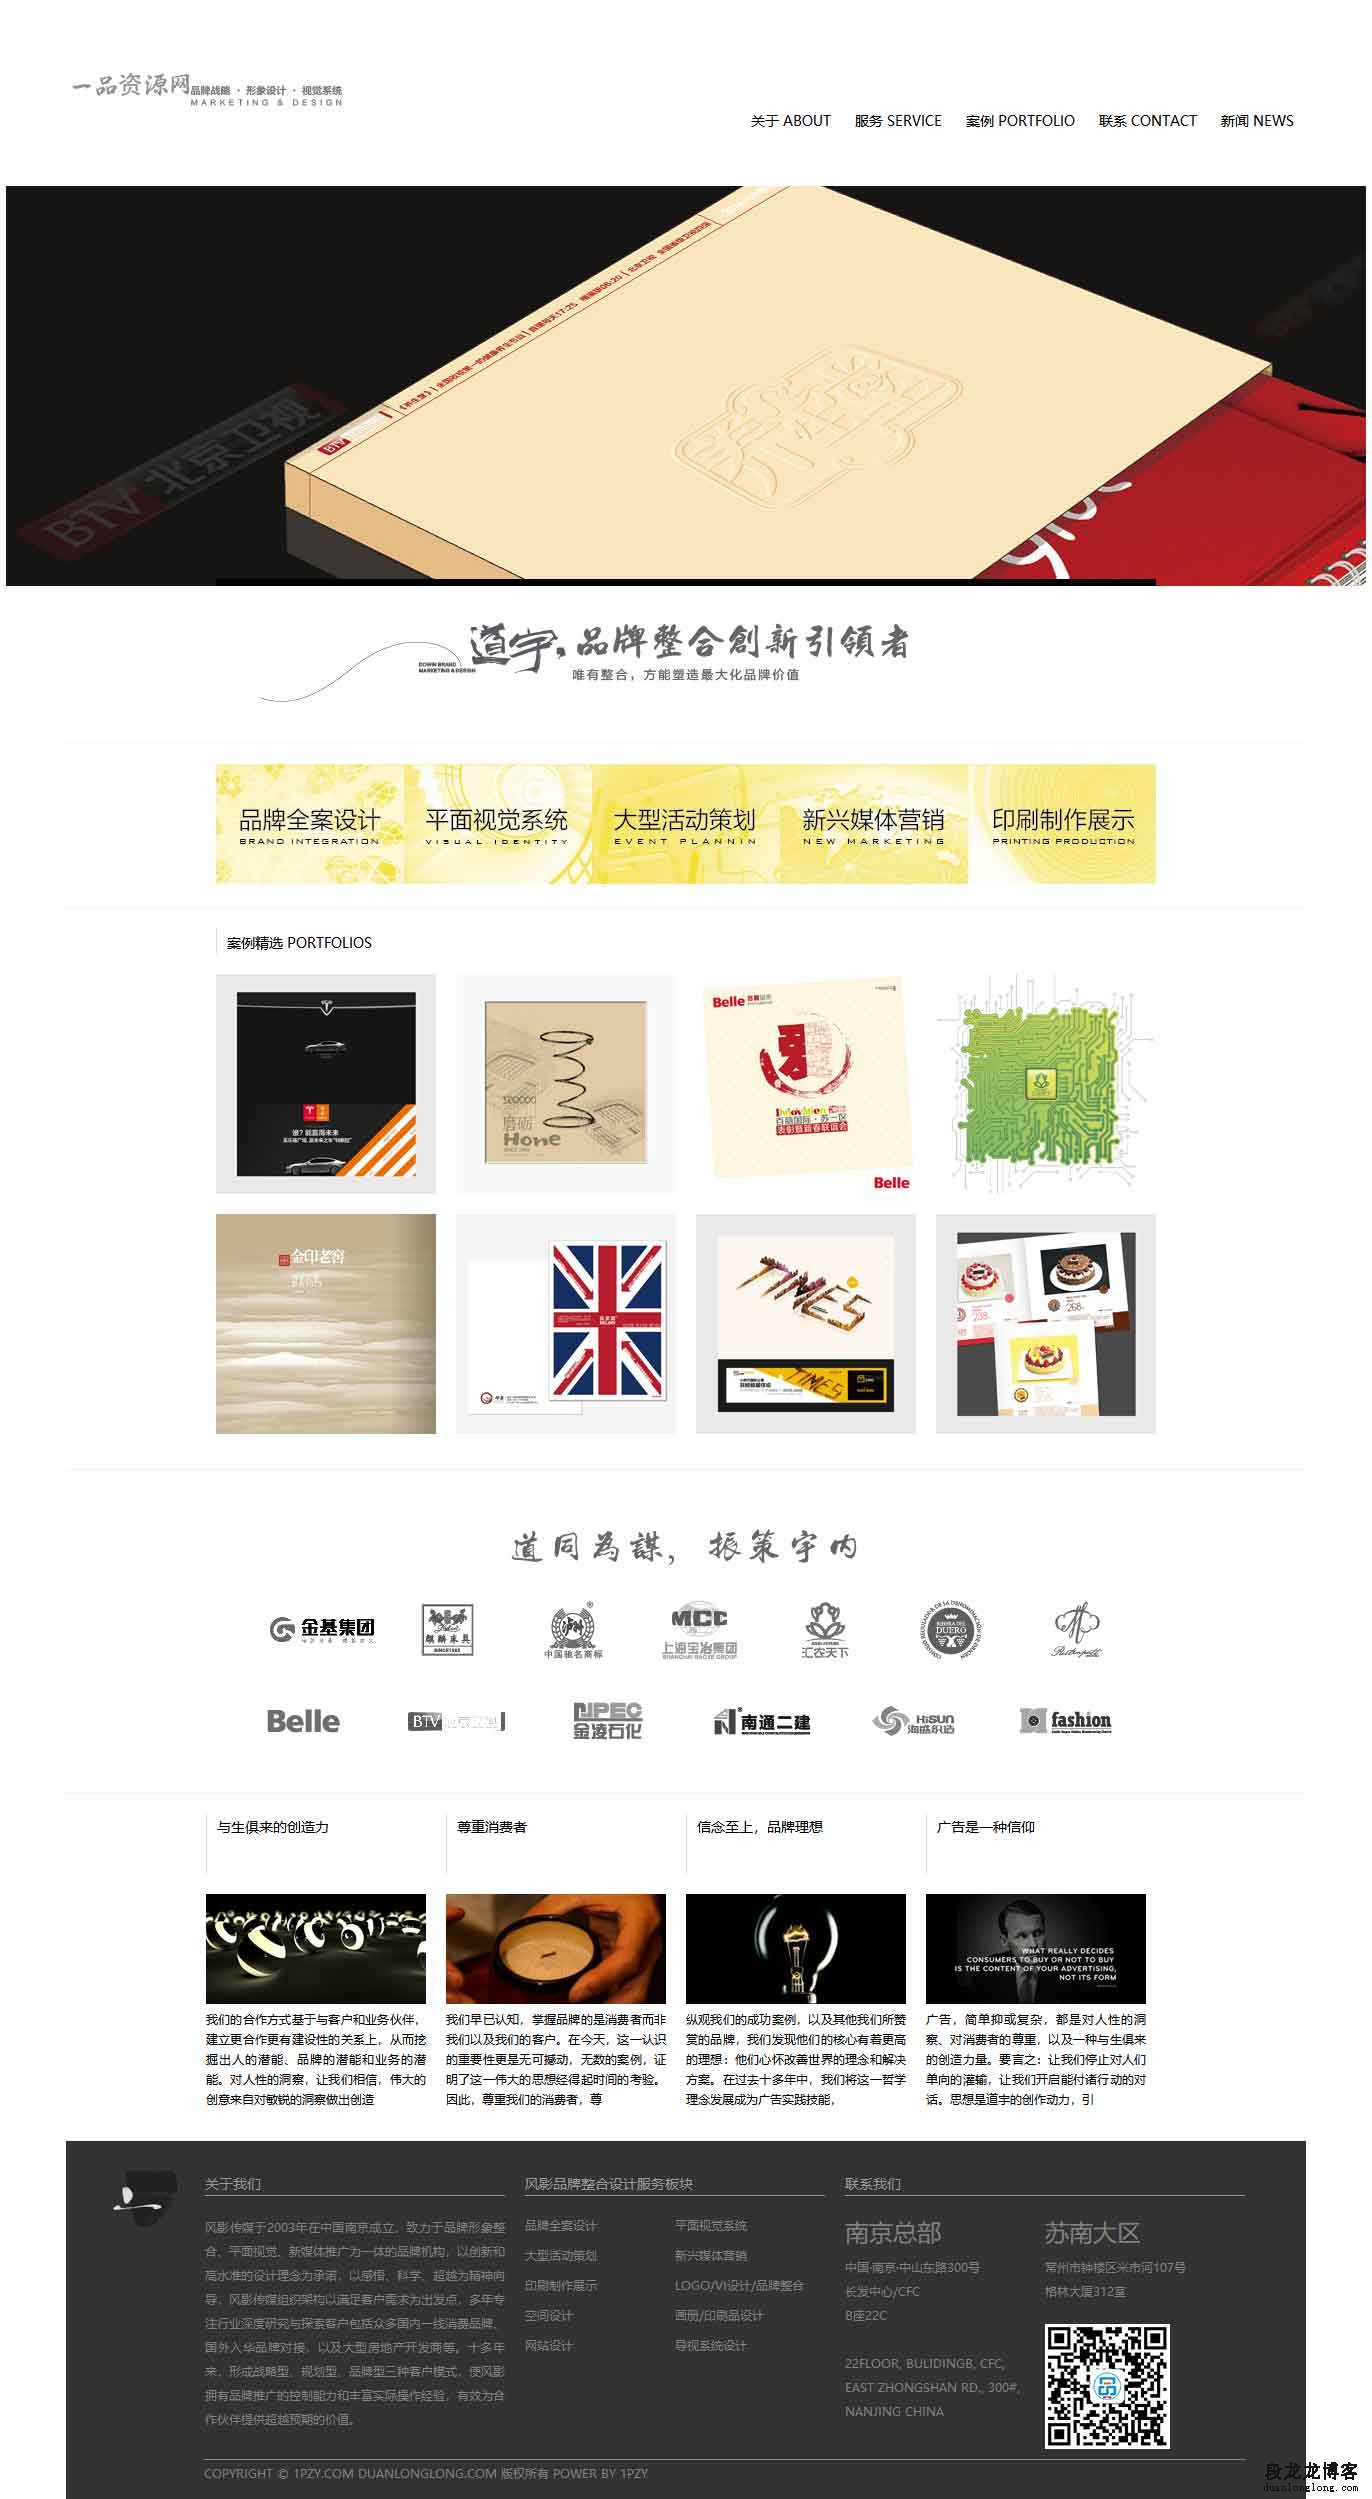 dedecms广告品牌设计企业公司织梦整站网站模板程序